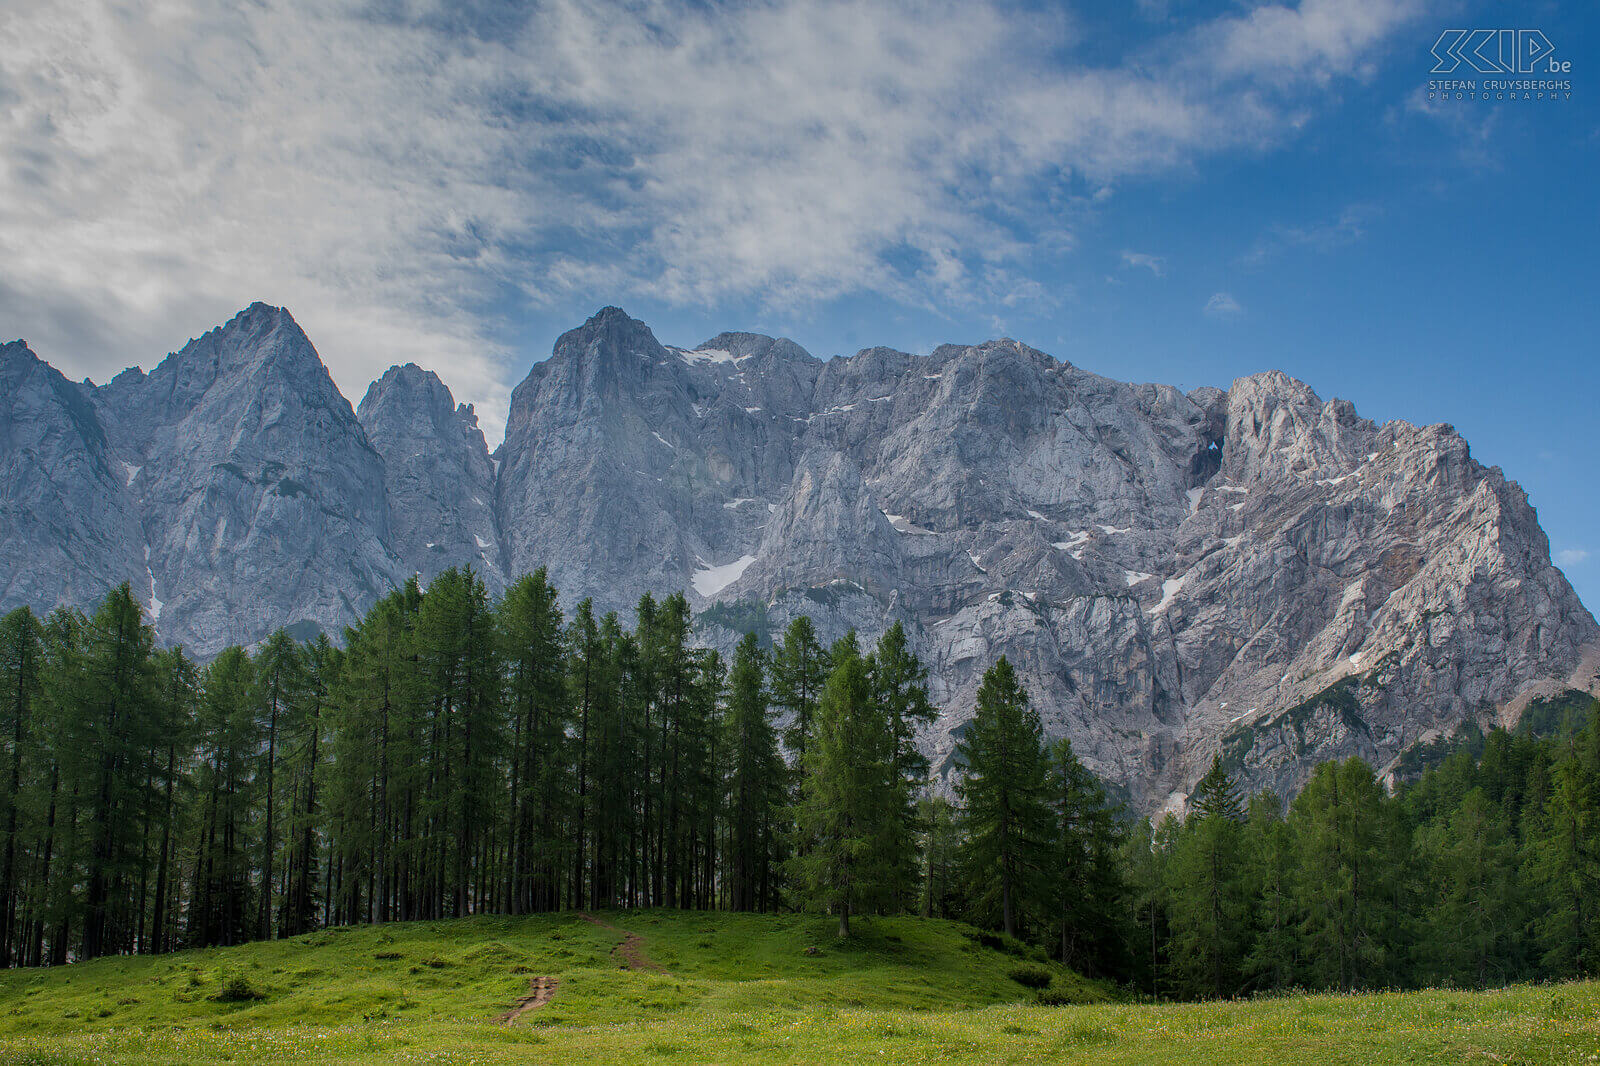 Triglav NP - Vršic-pas De Vršic-pas op 1611 meter hoogte is de hoogste bergpas van Slovenië. De pas is gelegen in de oostelijke Julische Alpen. Over de pas loopt de regionale weg R206 tussen Kranjska Gora en Trenta. De Vršic-pas heeft 50 haarspeldbochten en is een van de mooiste wegen van Europa Stefan Cruysberghs